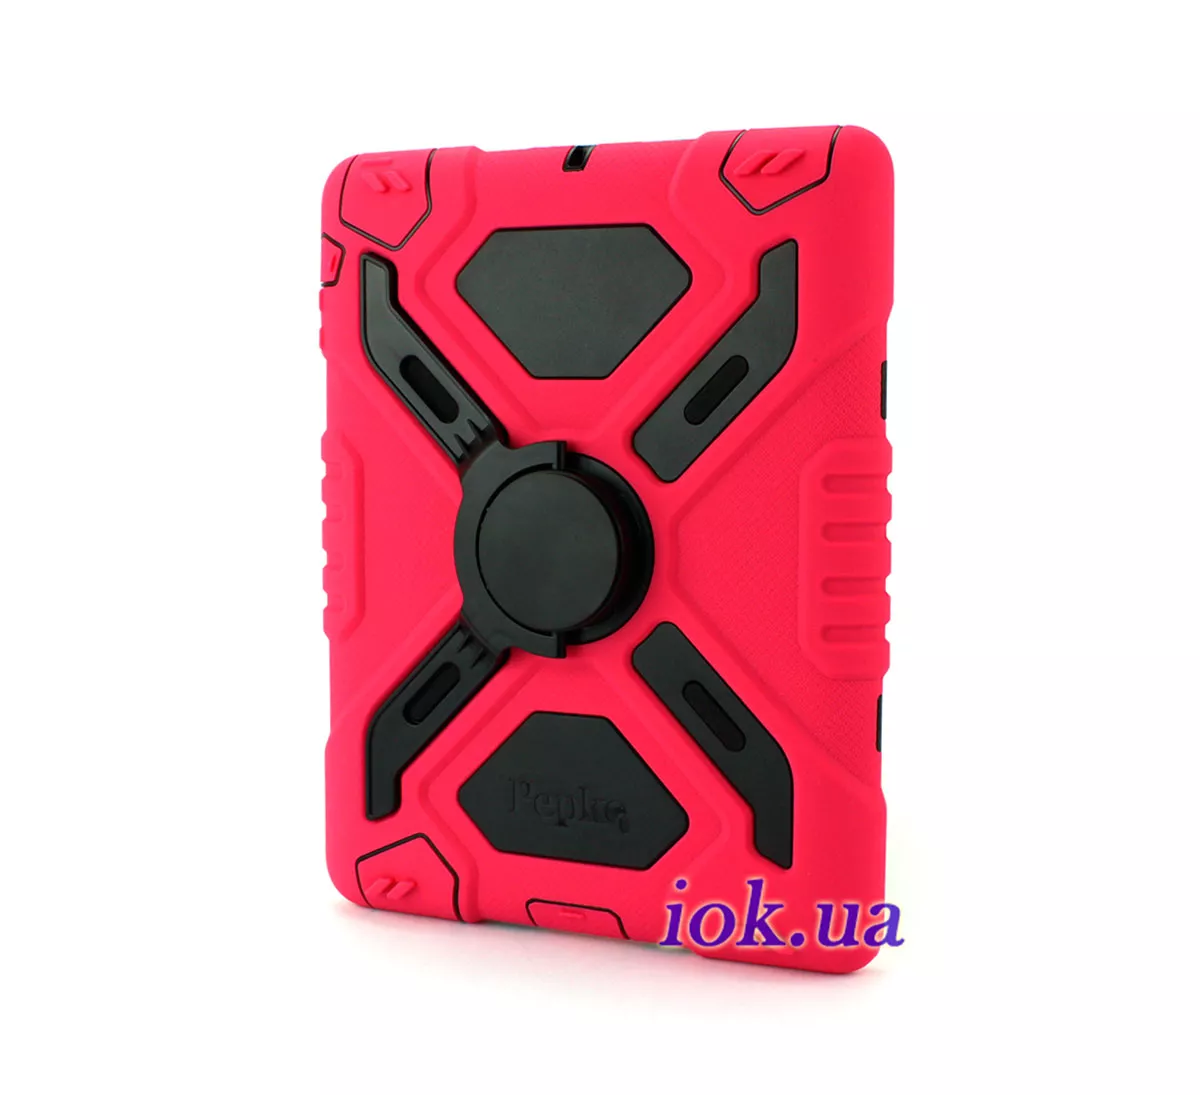 Защитный чехол для iPad Mini 1/2 - Pepkoo, розовый